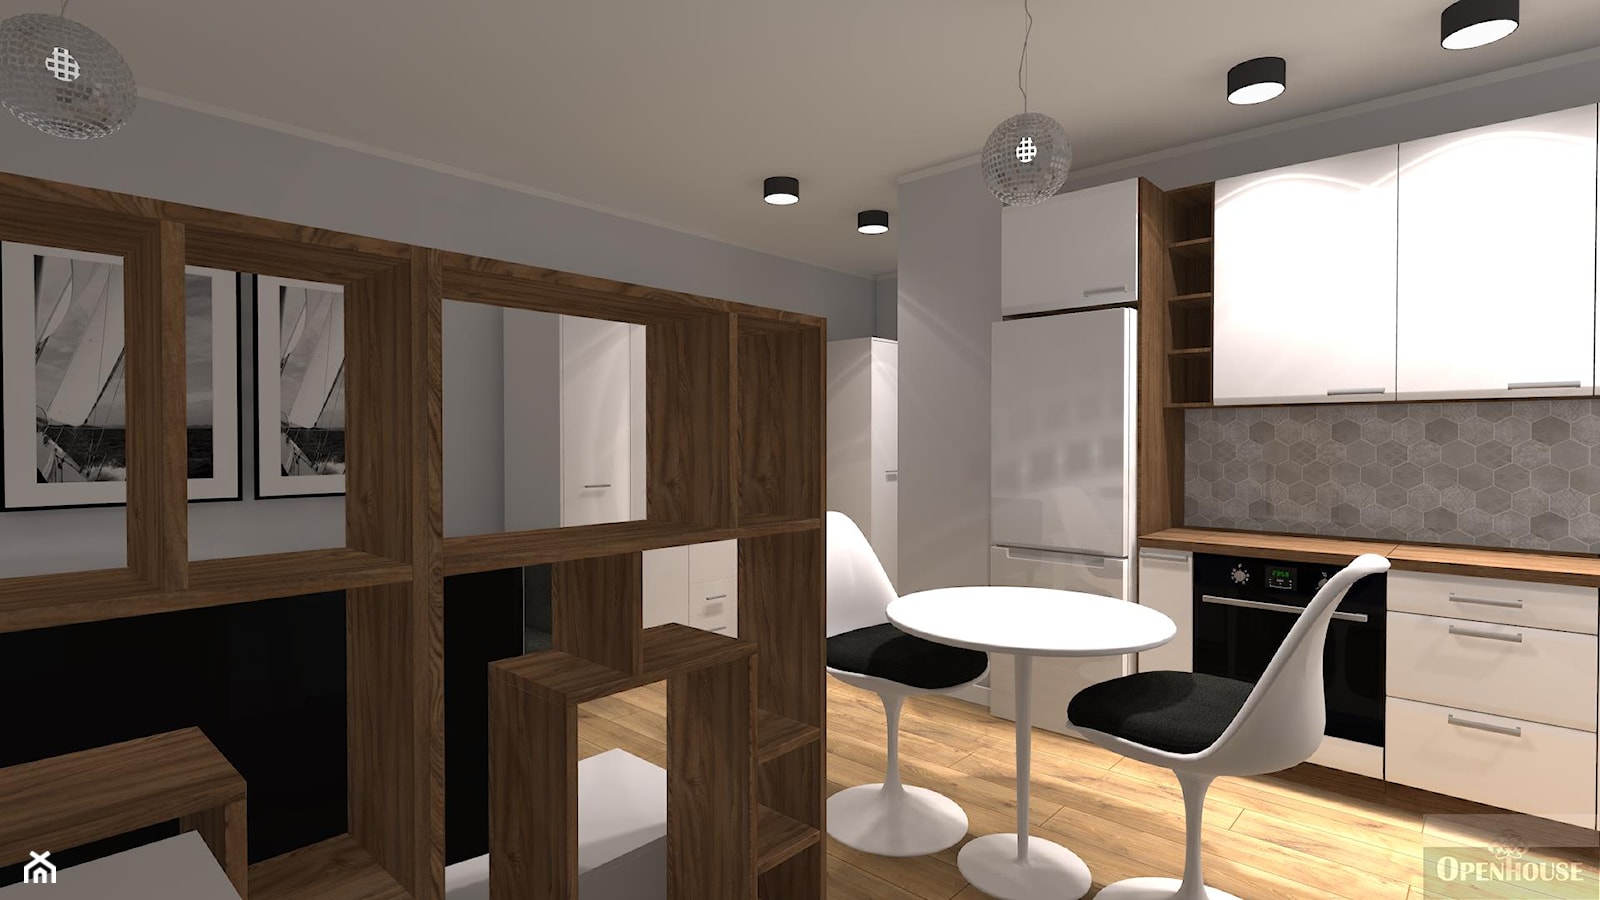 Kompaktowe 2 pokoje - Mała szara jadalnia w kuchni - zdjęcie od OPEN HOUSE INVEST - Homebook